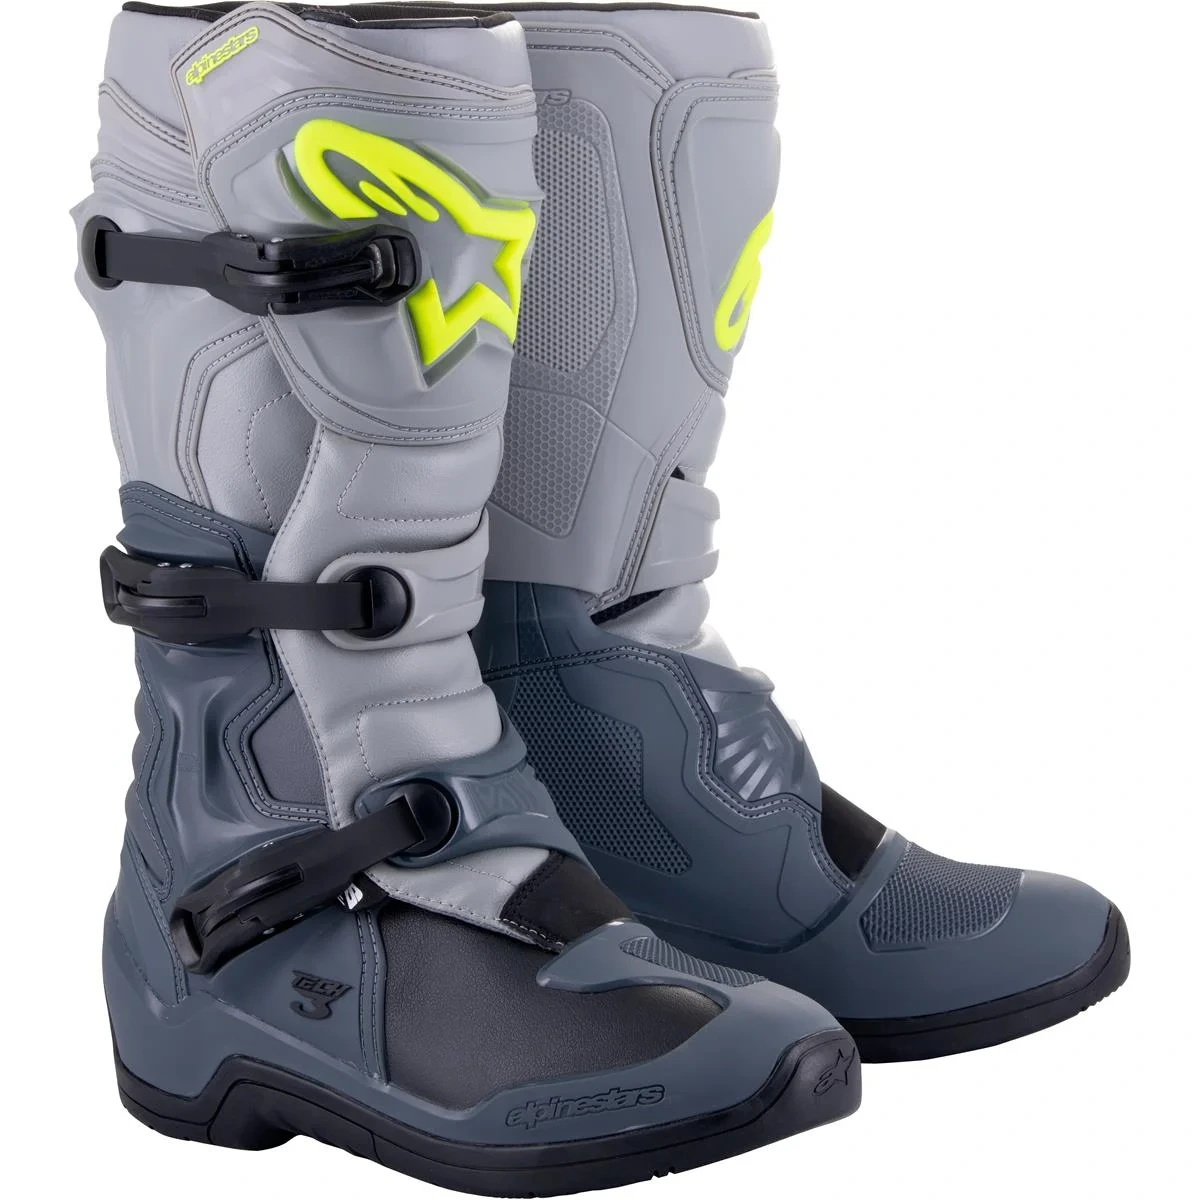 Image of Alpinestars Tech 3 Boots Dark Gray Light Gray Black Size US 8 EN